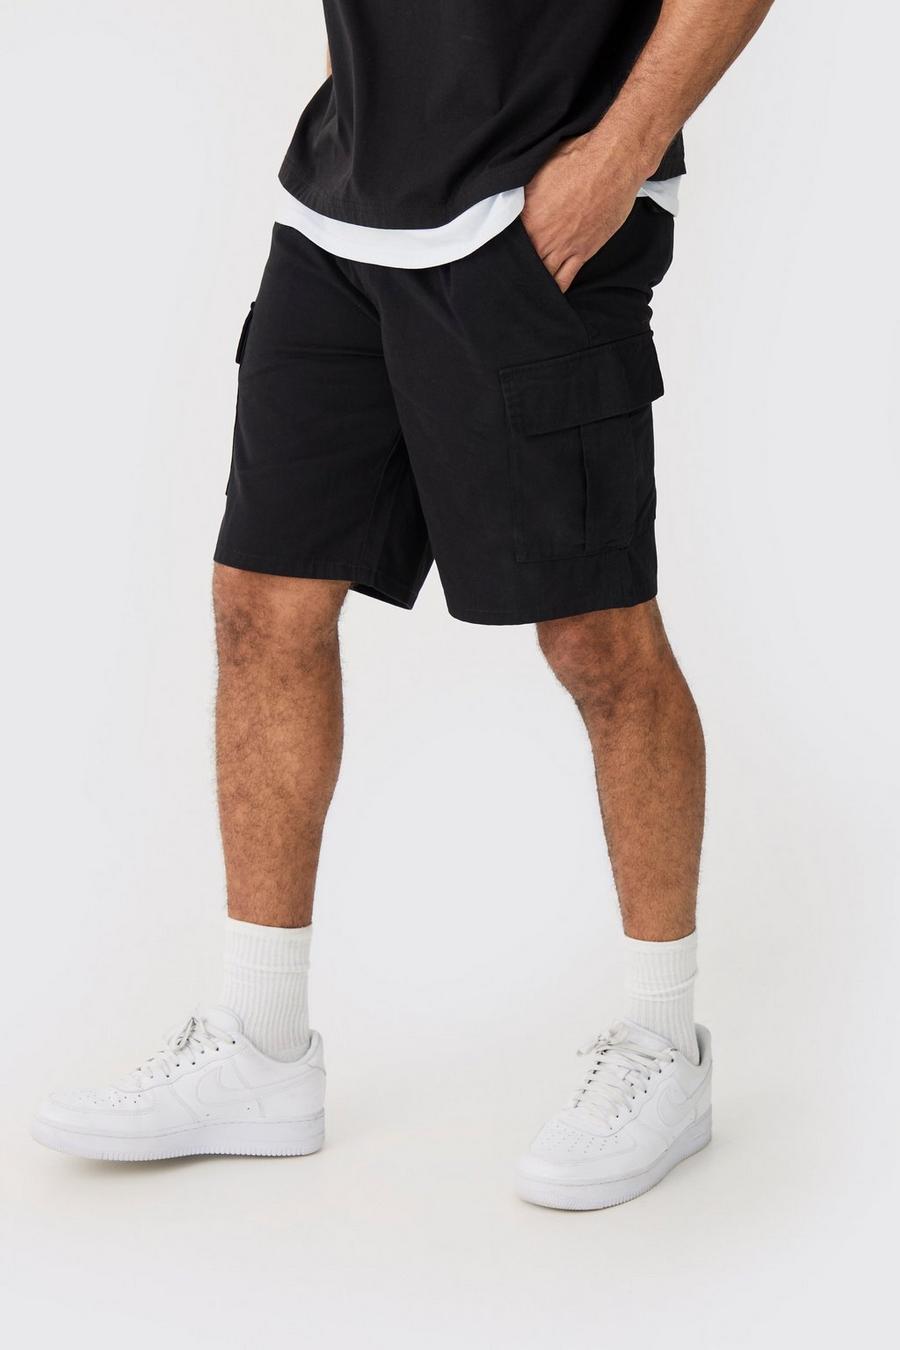 Elastic Waist Black Shorts mit GG-Besatz